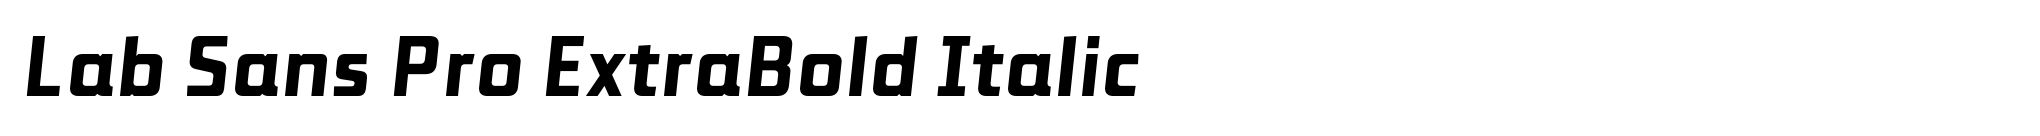 Lab Sans Pro ExtraBold Italic image